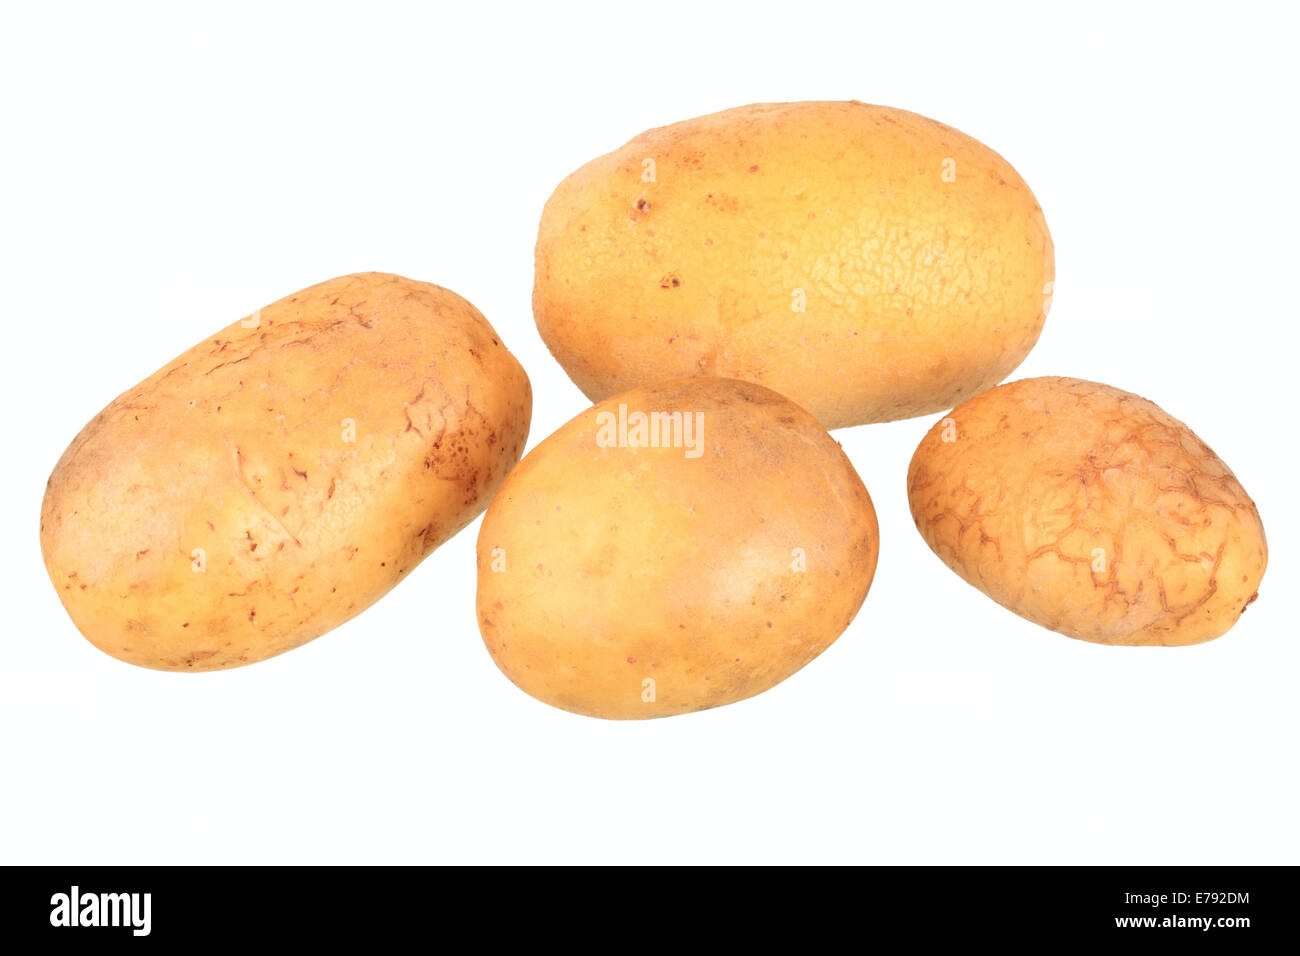 Les pommes de terre, variété de talents Banque D'Images